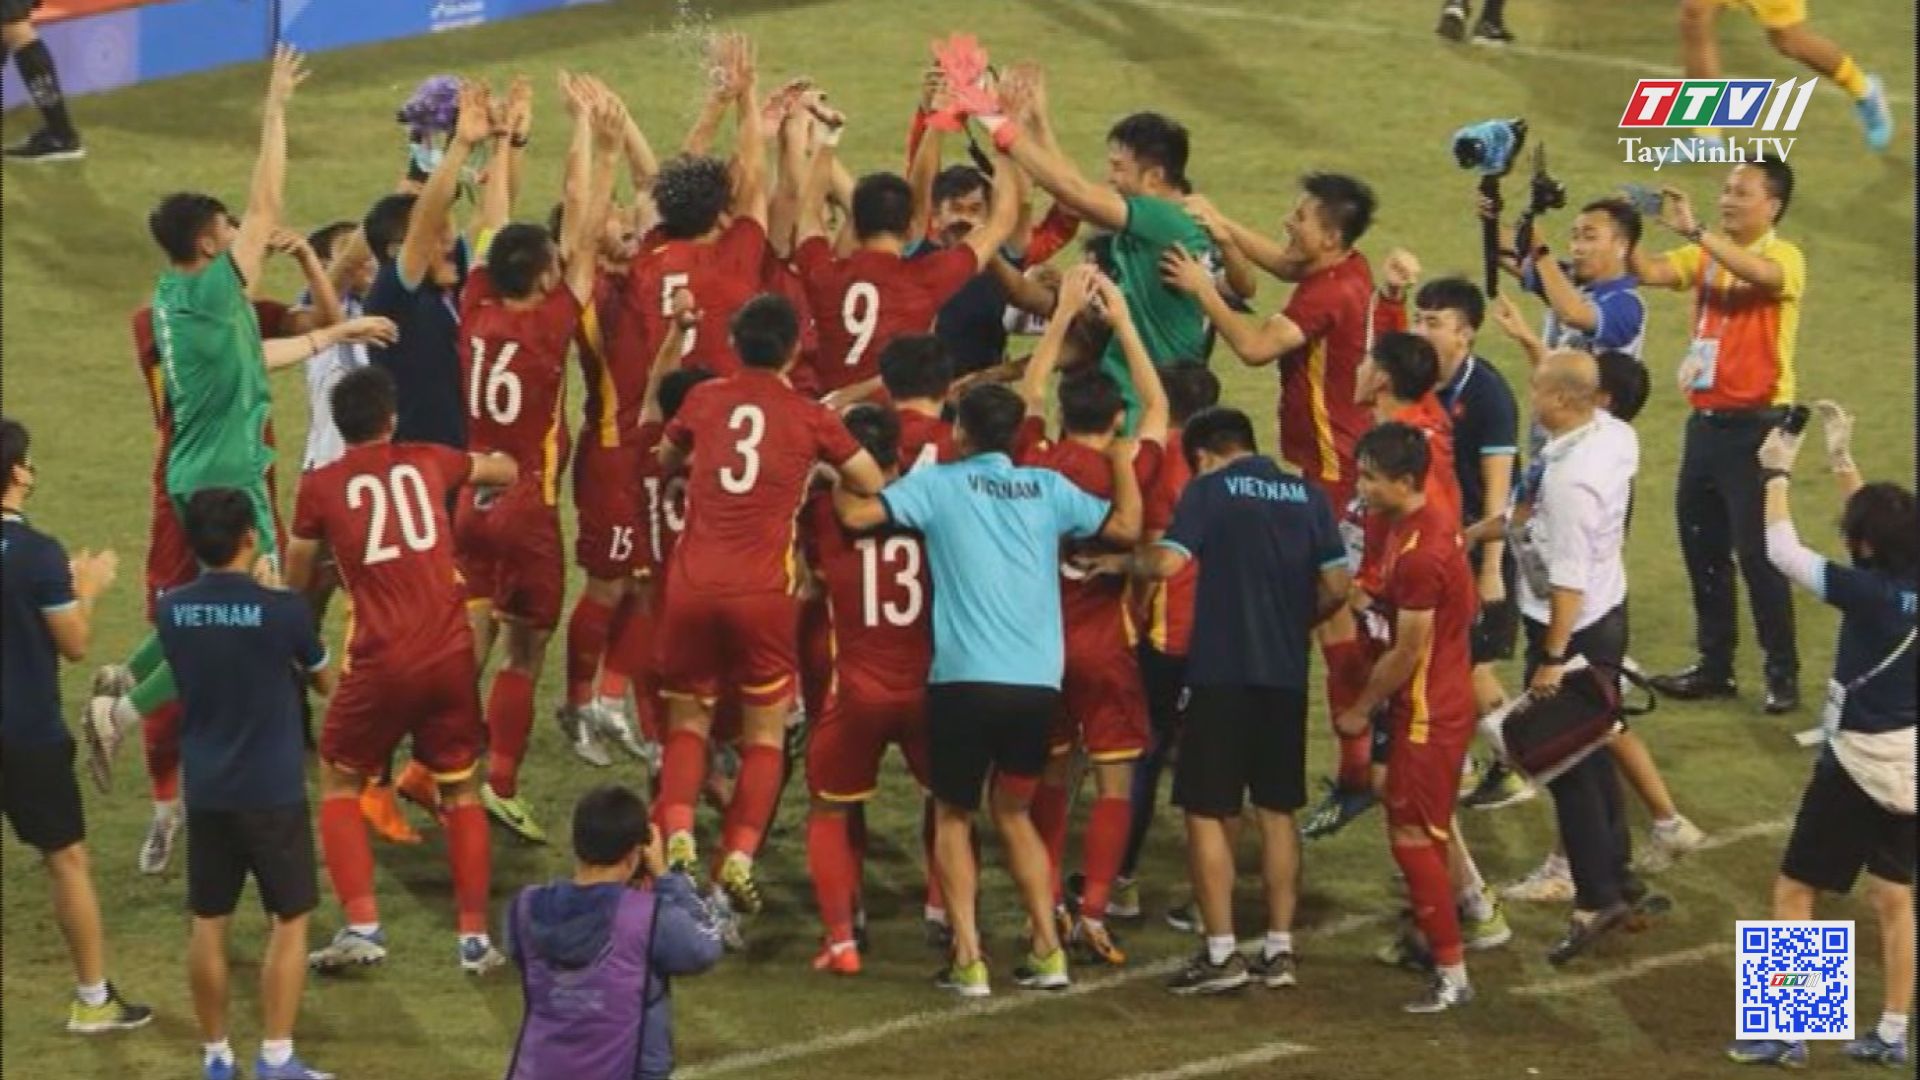 Đánh bại Thái Lan, U23 Việt Nam bảo vệ thành công chiếc HCV Sea Games | TayNinhTVE